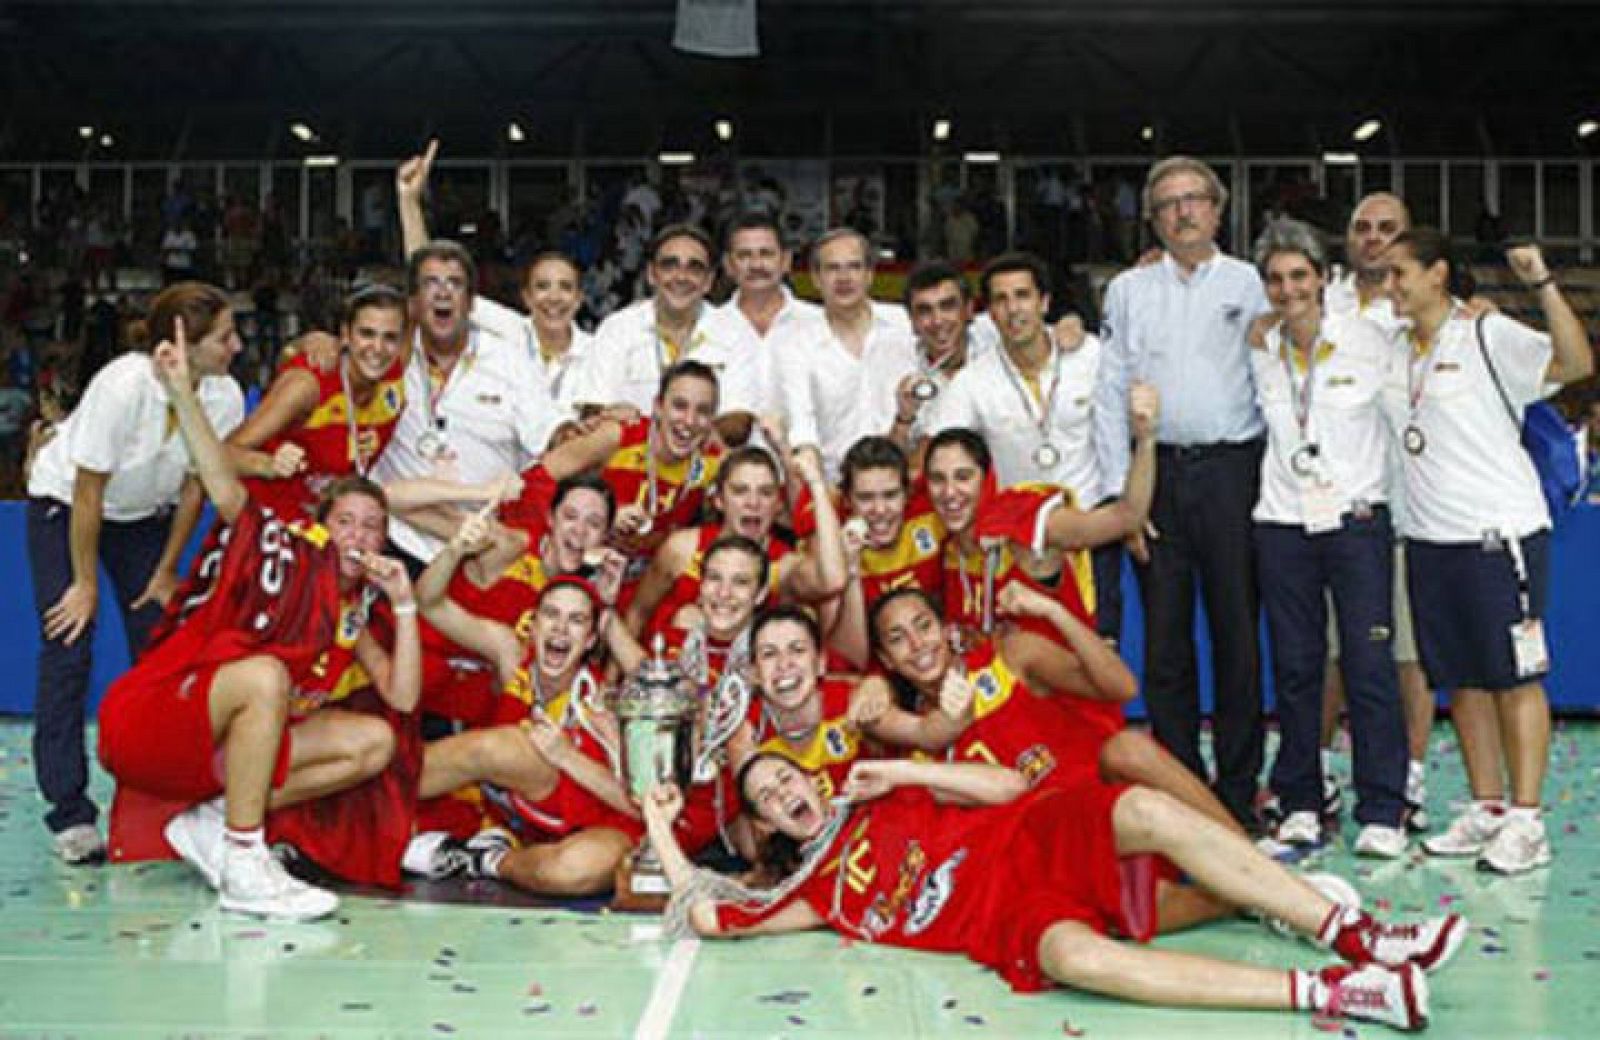 La selección española femenina de baloncesto se proclamó campeona de Europa sub'16, después de derrotar, por 57-53, a Bélgica en la final del campeonato continental de la categoría, disputada en Nápoles.